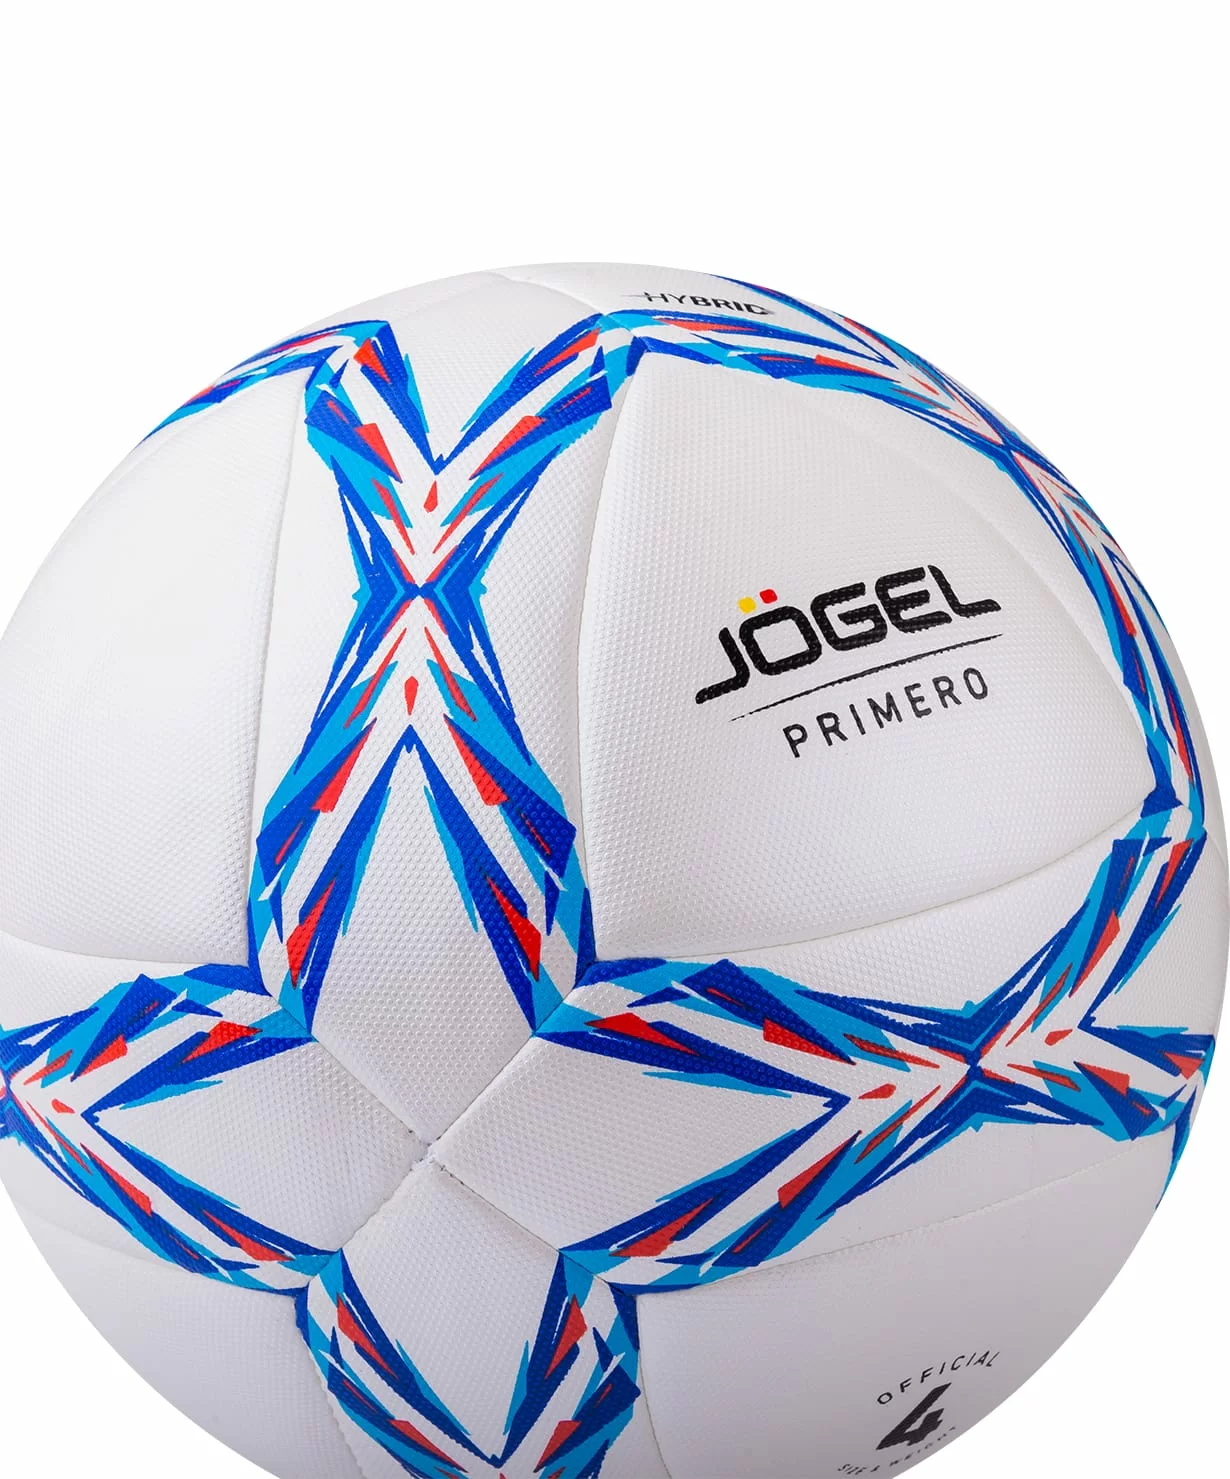 Реальное фото Мяч футбольный Jogel JS-910 Primero №4 14380 от магазина СпортСЕ